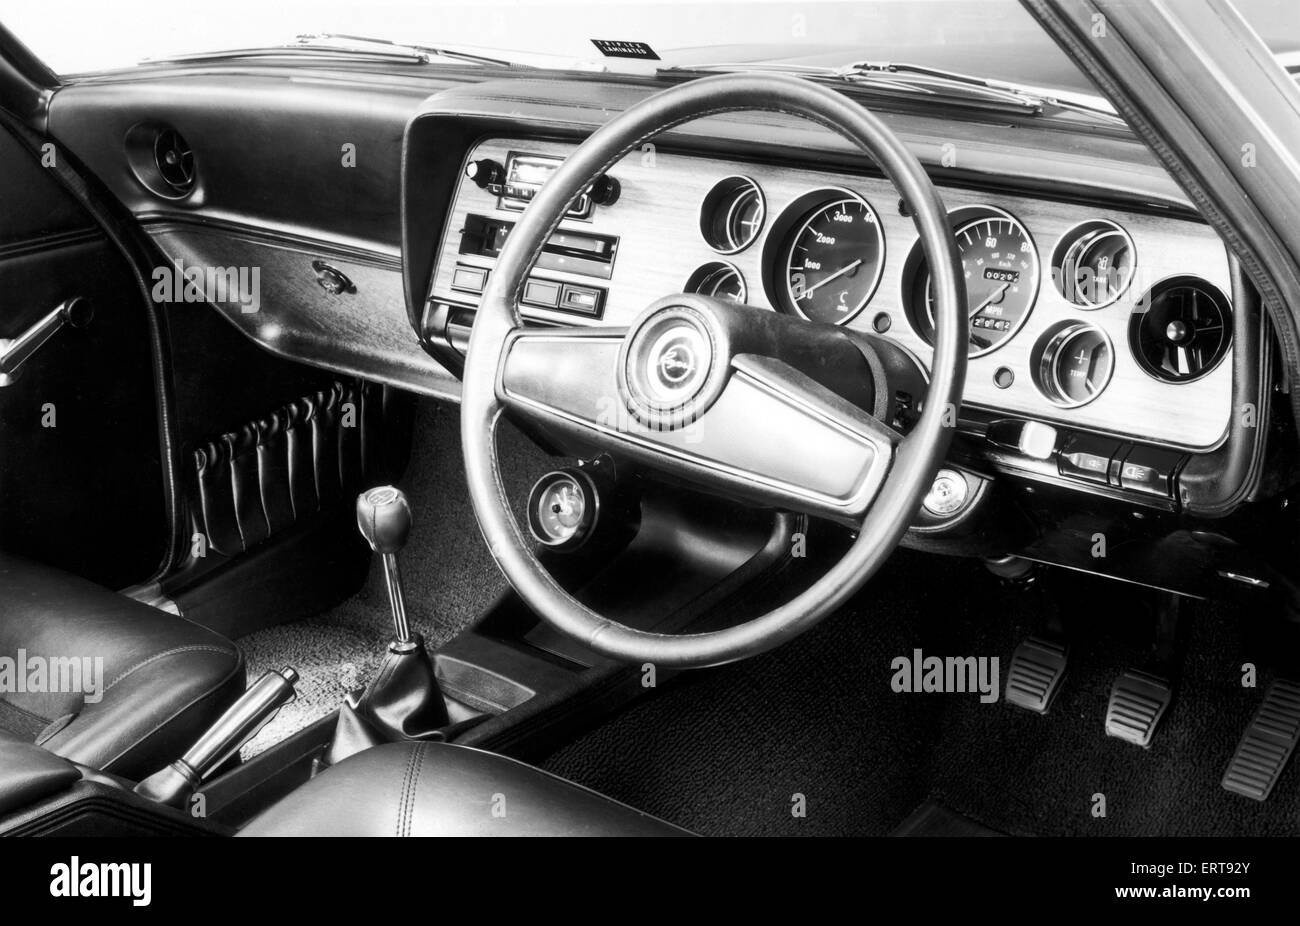 Ford Capri war der Name von der Ford Motor Company für drei verschiedene Automodelle. Die Ford Konsul Capri Coupe wurde von Ford of Britain von 1961 bis 1964 hergestellt. Die Ford Capri Coupe wurde von Ford of Europe von 1969 bis 1986 produziert. Das Ford/Mercury Capri Cabrio wurde von der Ford Motor Company von Australien von 1989 bis 1994 produziert. (Bild) Das neu gestaltete Interieur des Ford Capri GXL 27. September 1992 Stockfoto